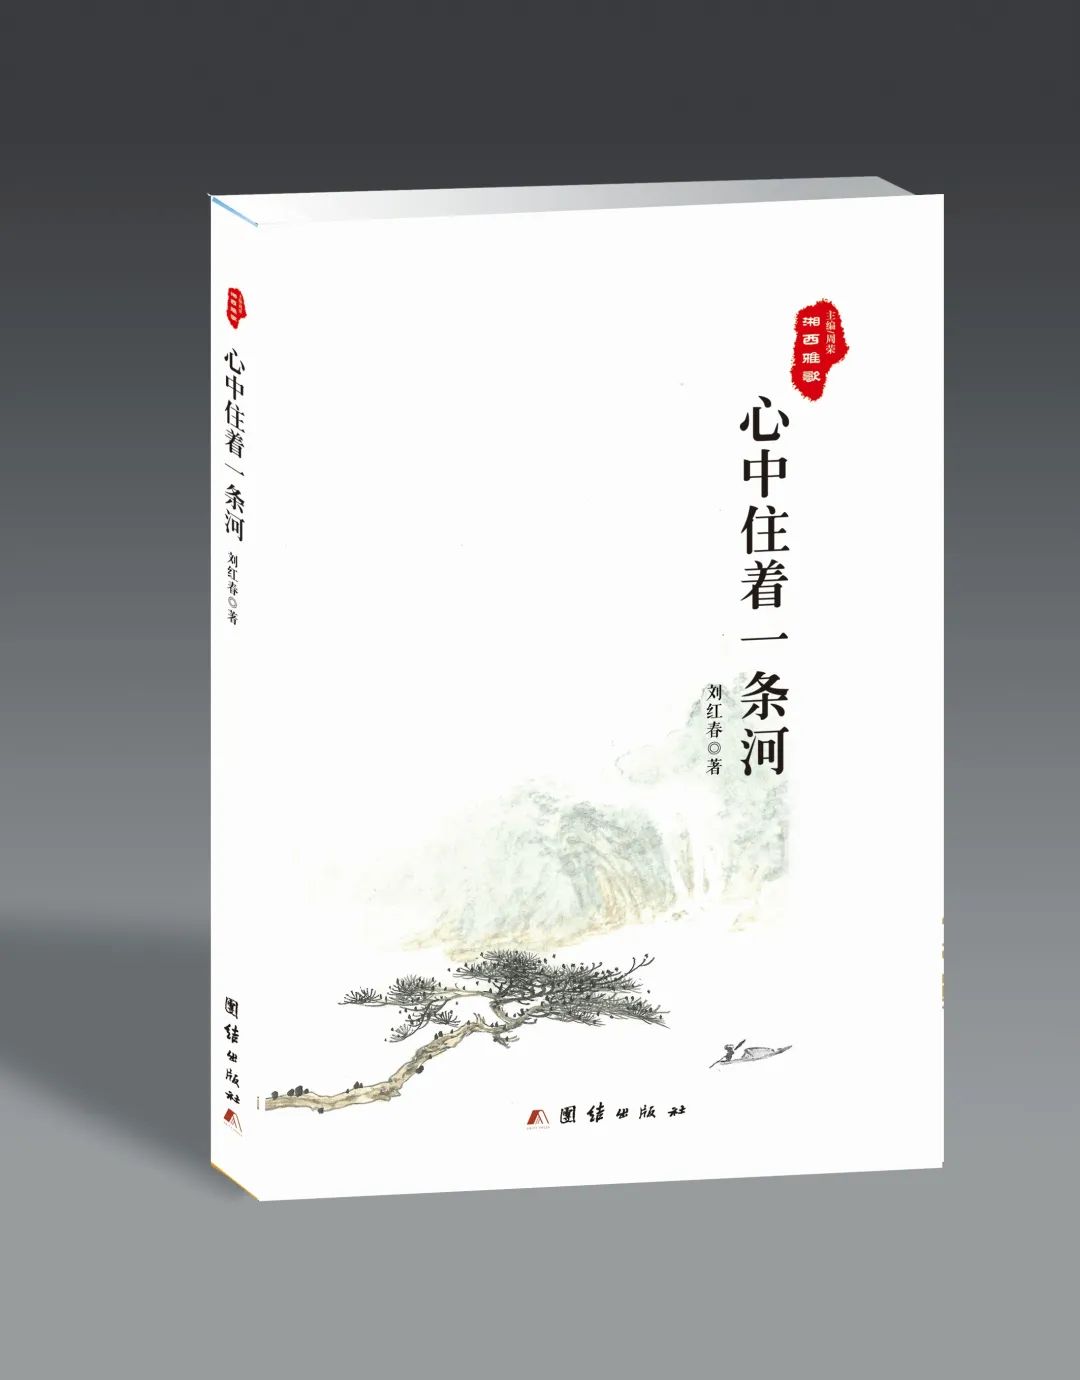 艺评丨张强勇：在文字森林里自由舞蹈——读刘红春散文集《心中住着一条河》